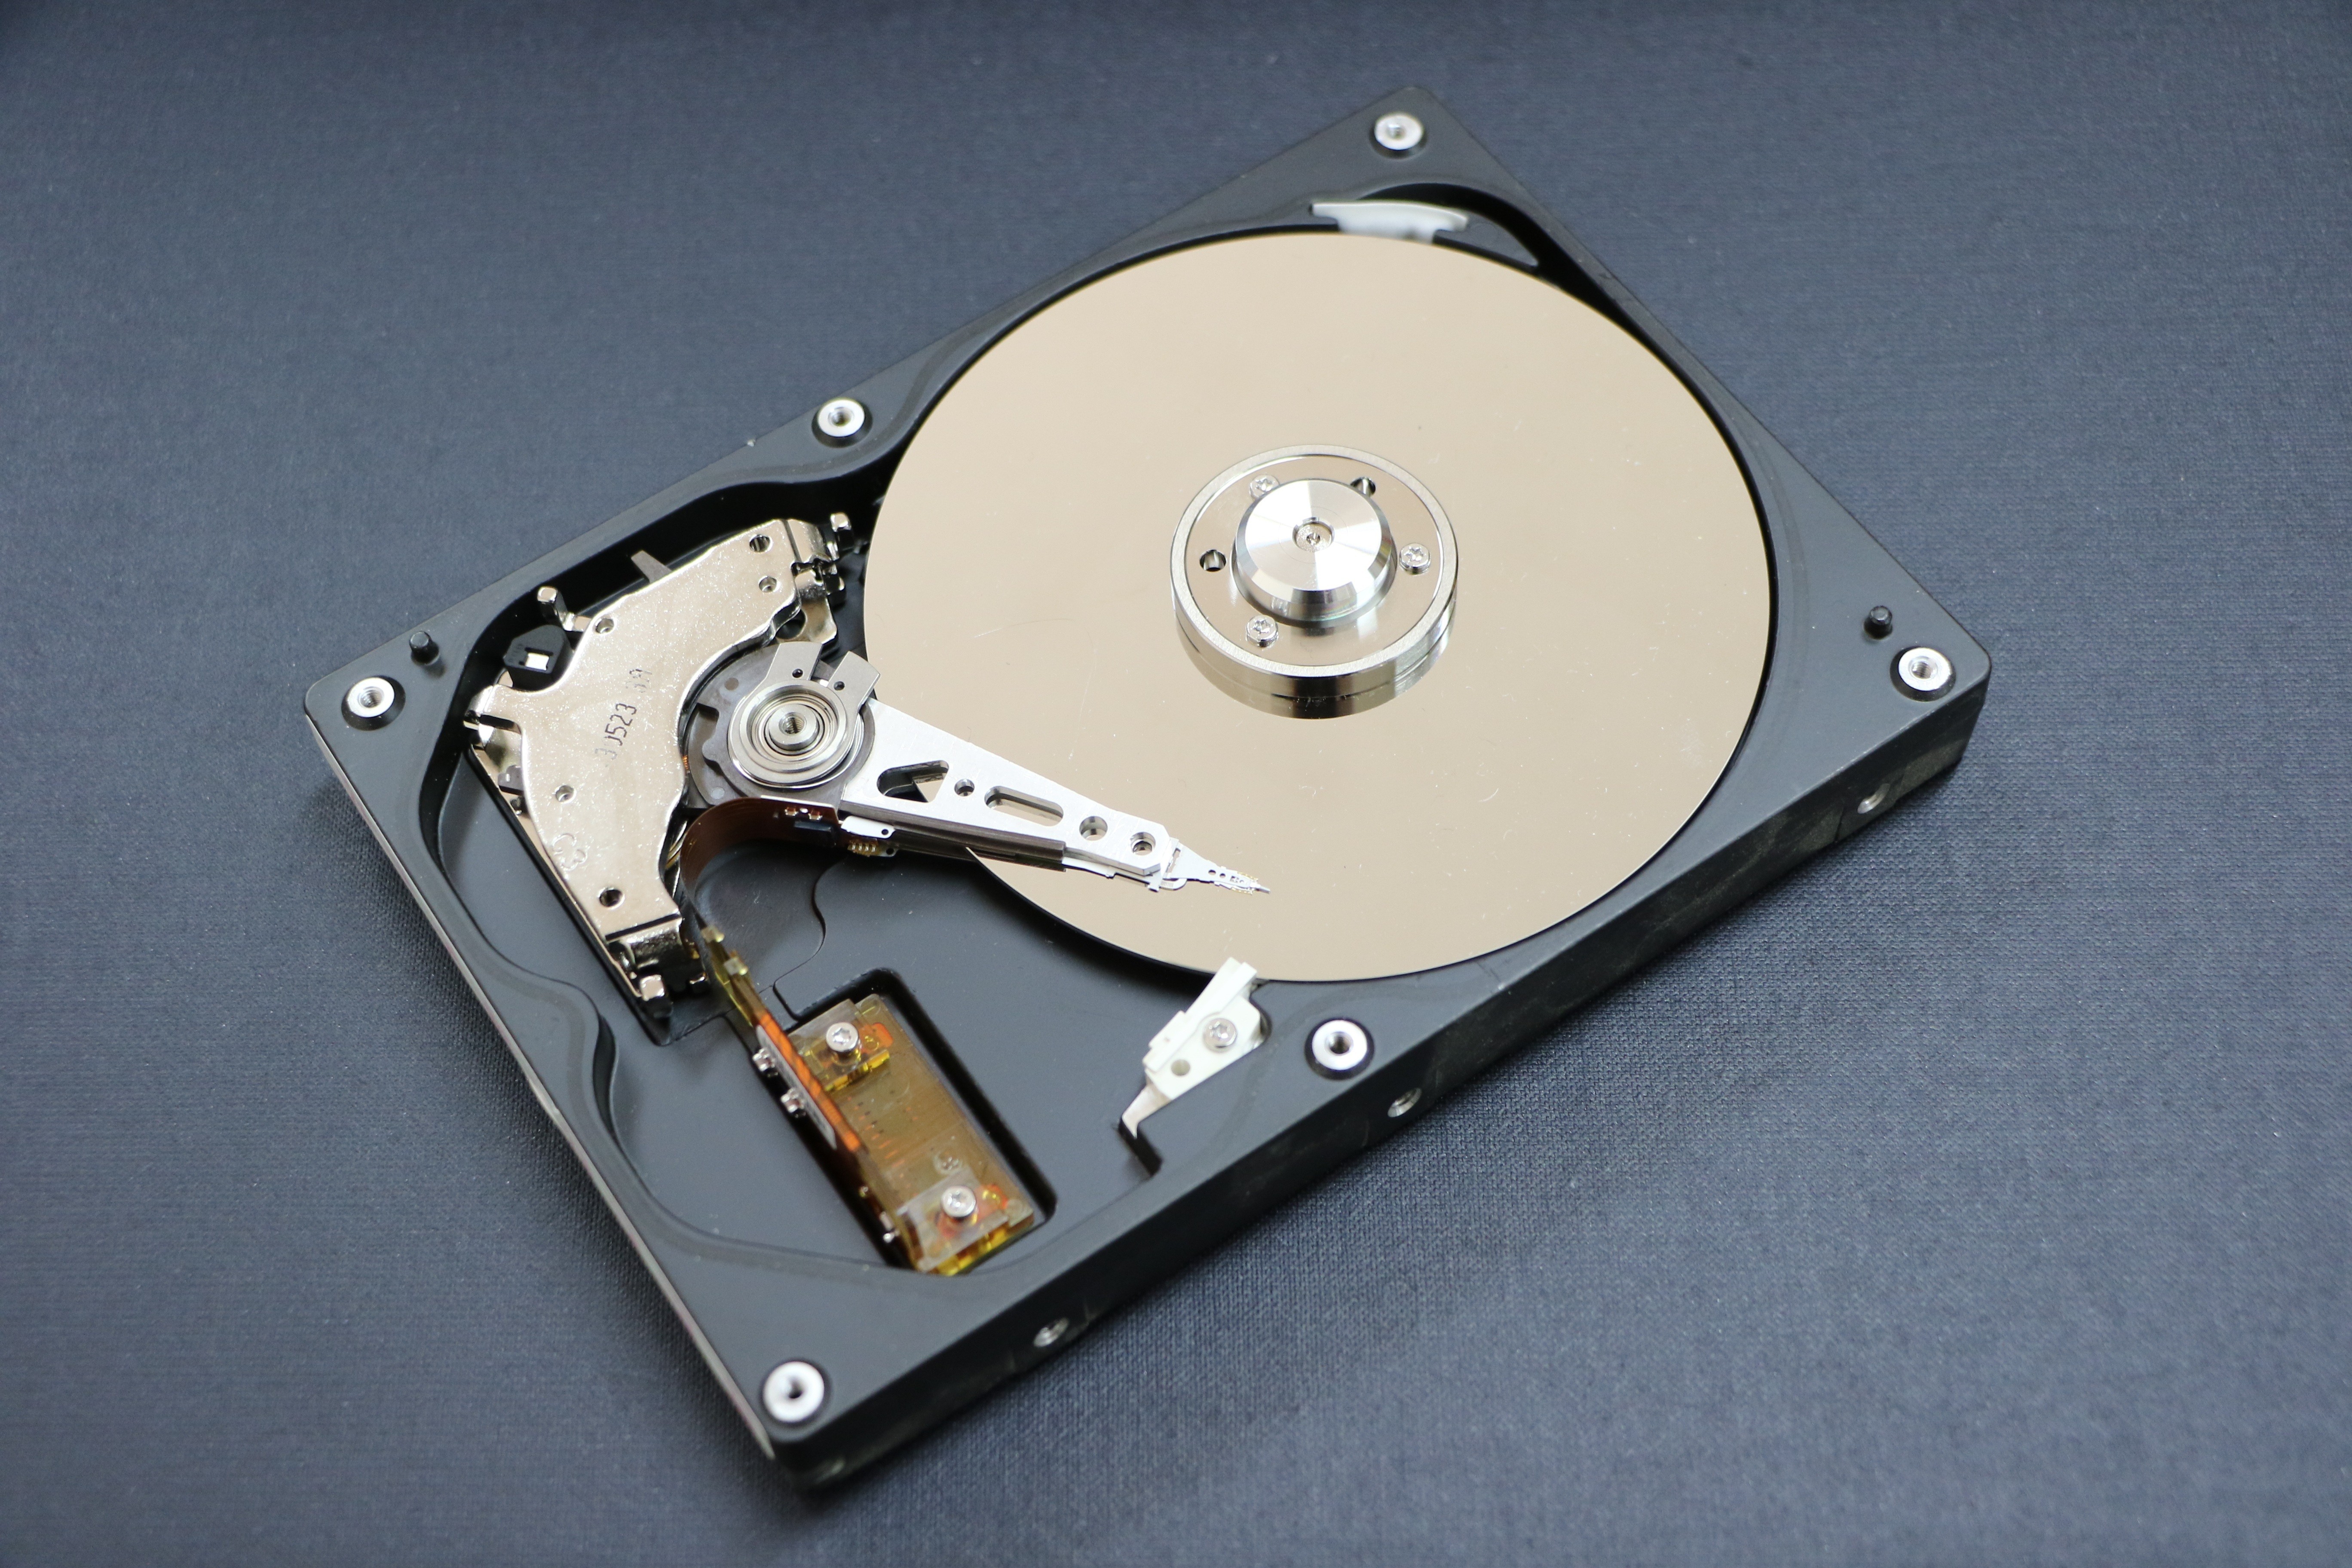 как поменять диск с на диск д для скачивания в стиме фото 74